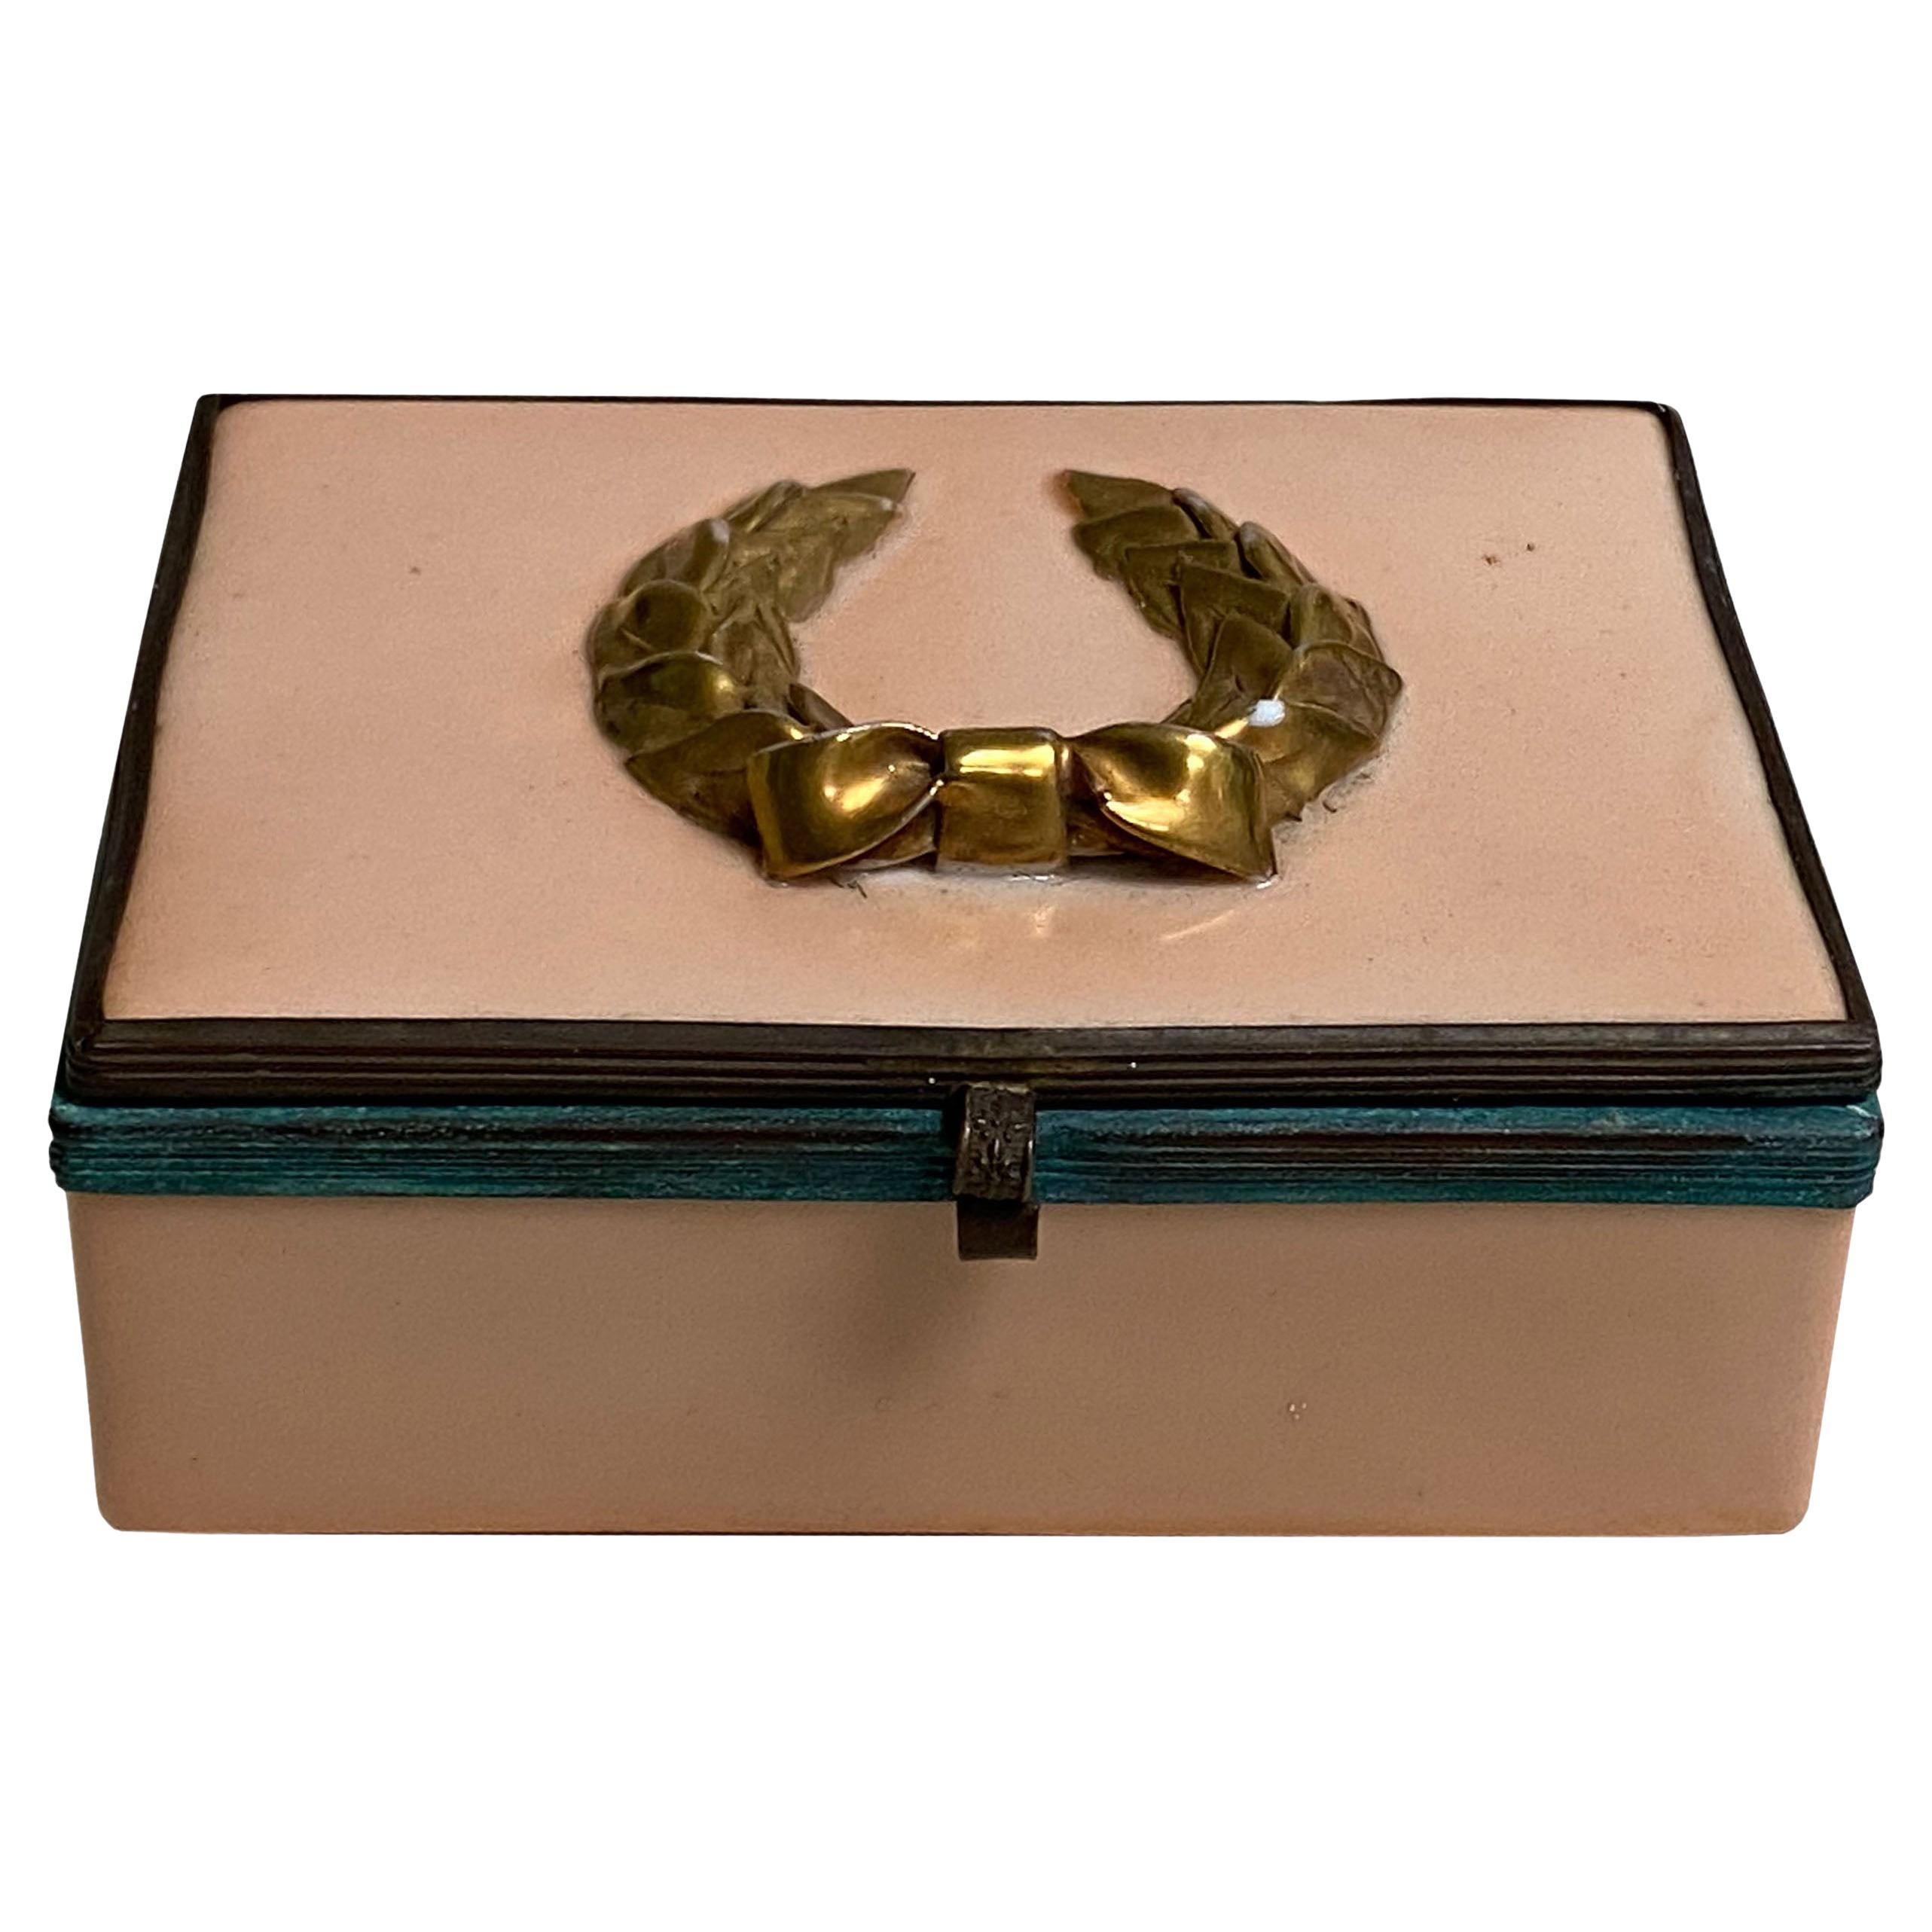 Une boîte en émail de couleur saumon avec un cadre et un loquet en bronze patiné, surmonté d'une couronne de laurier en or.